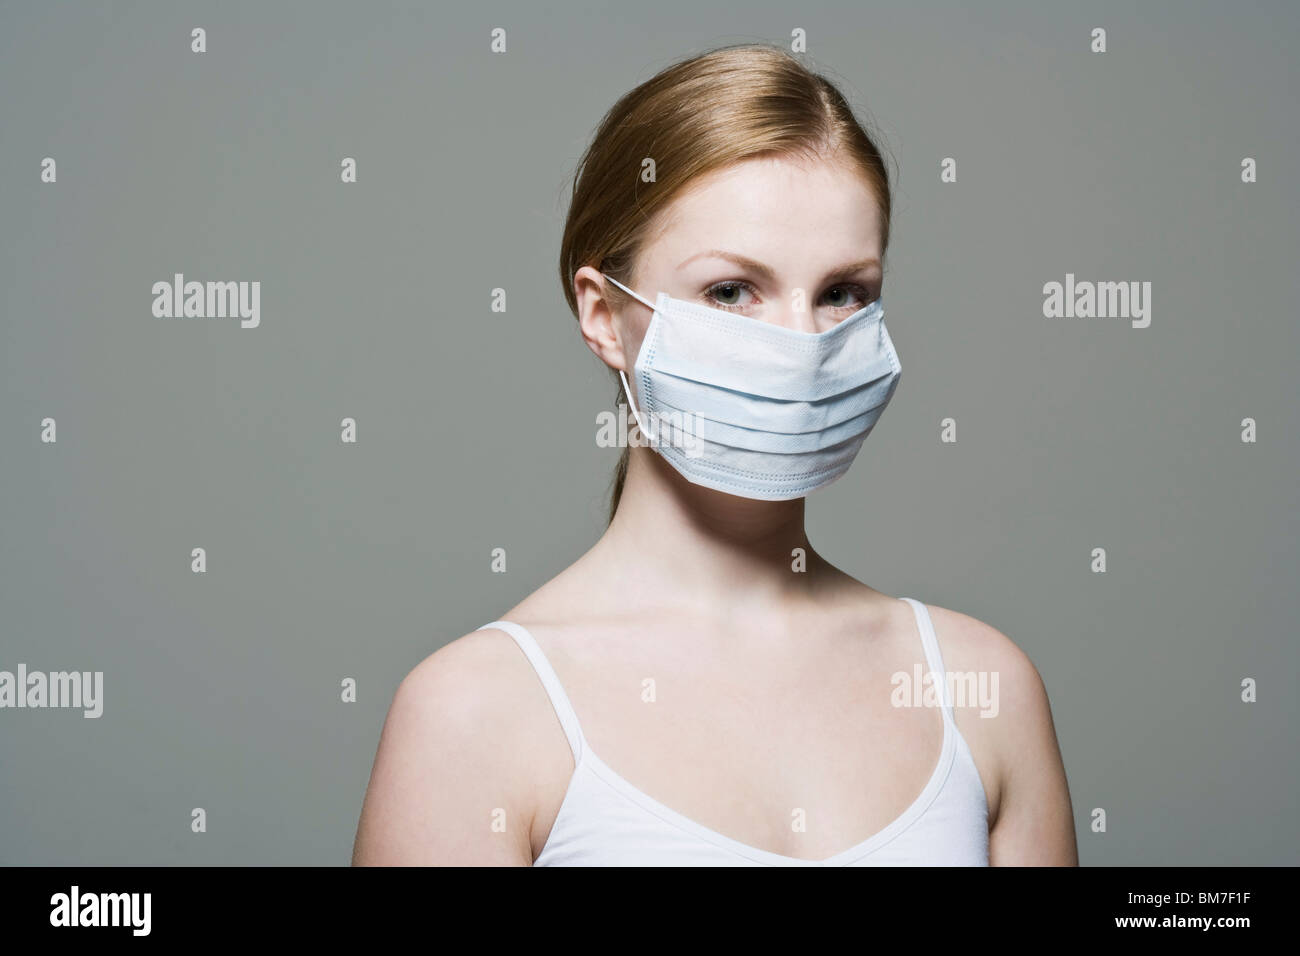 Une femme portant un masque chirurgical de protection Banque D'Images